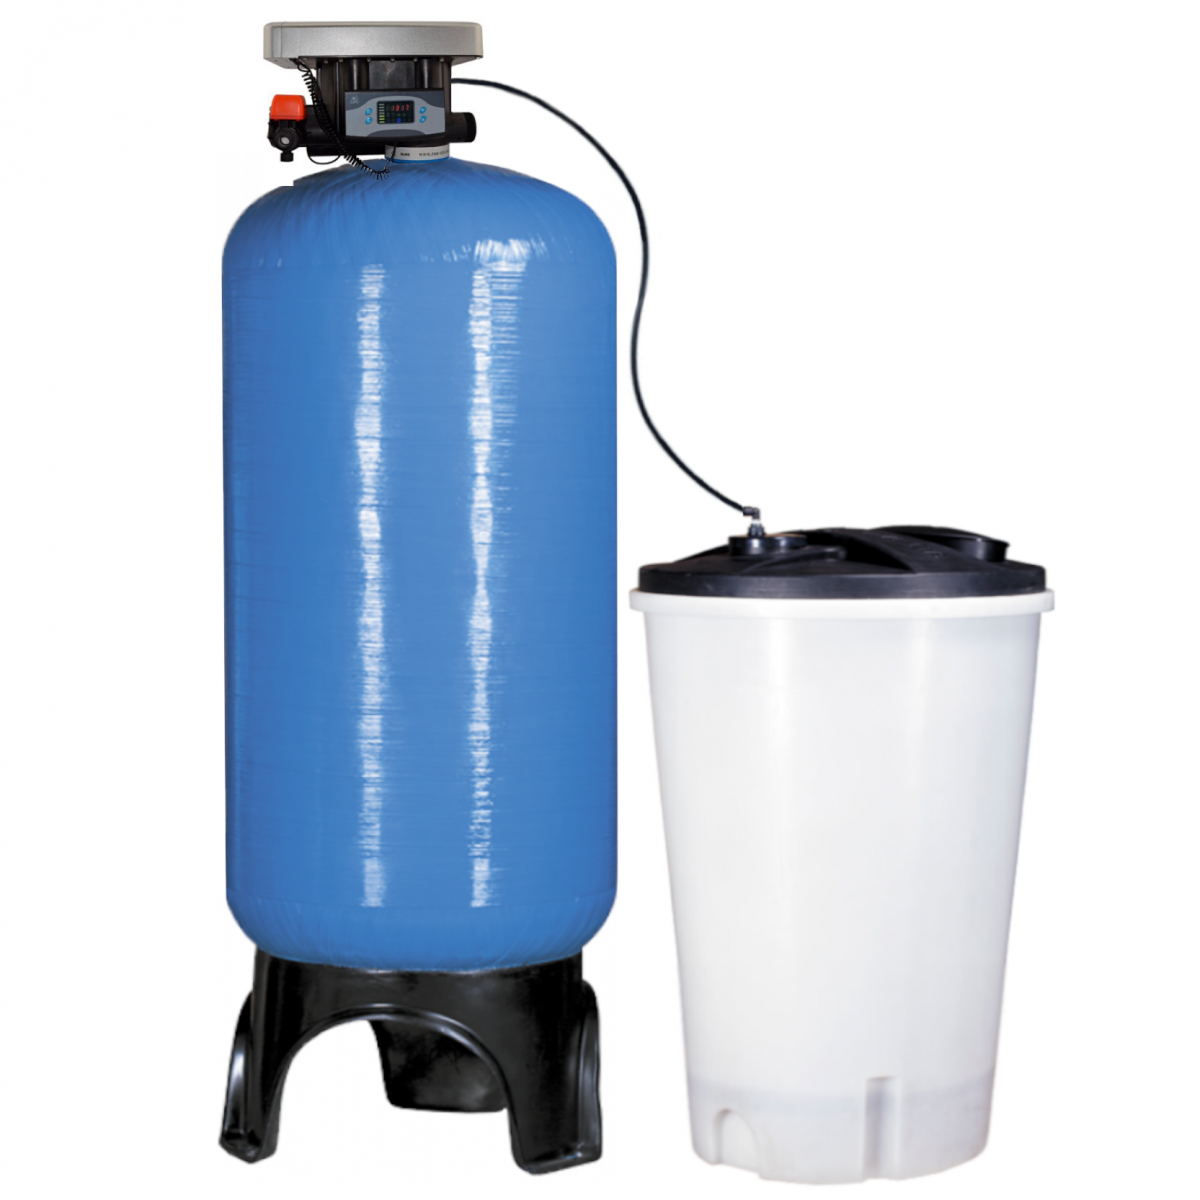 Фильтр смягчить воду. Умягчитель воды Clack 1054 с солевым баком. Умягчитель 3672. Фильтр умягчения воды fu1665ci. Умягчитель воды 600 л/ч.